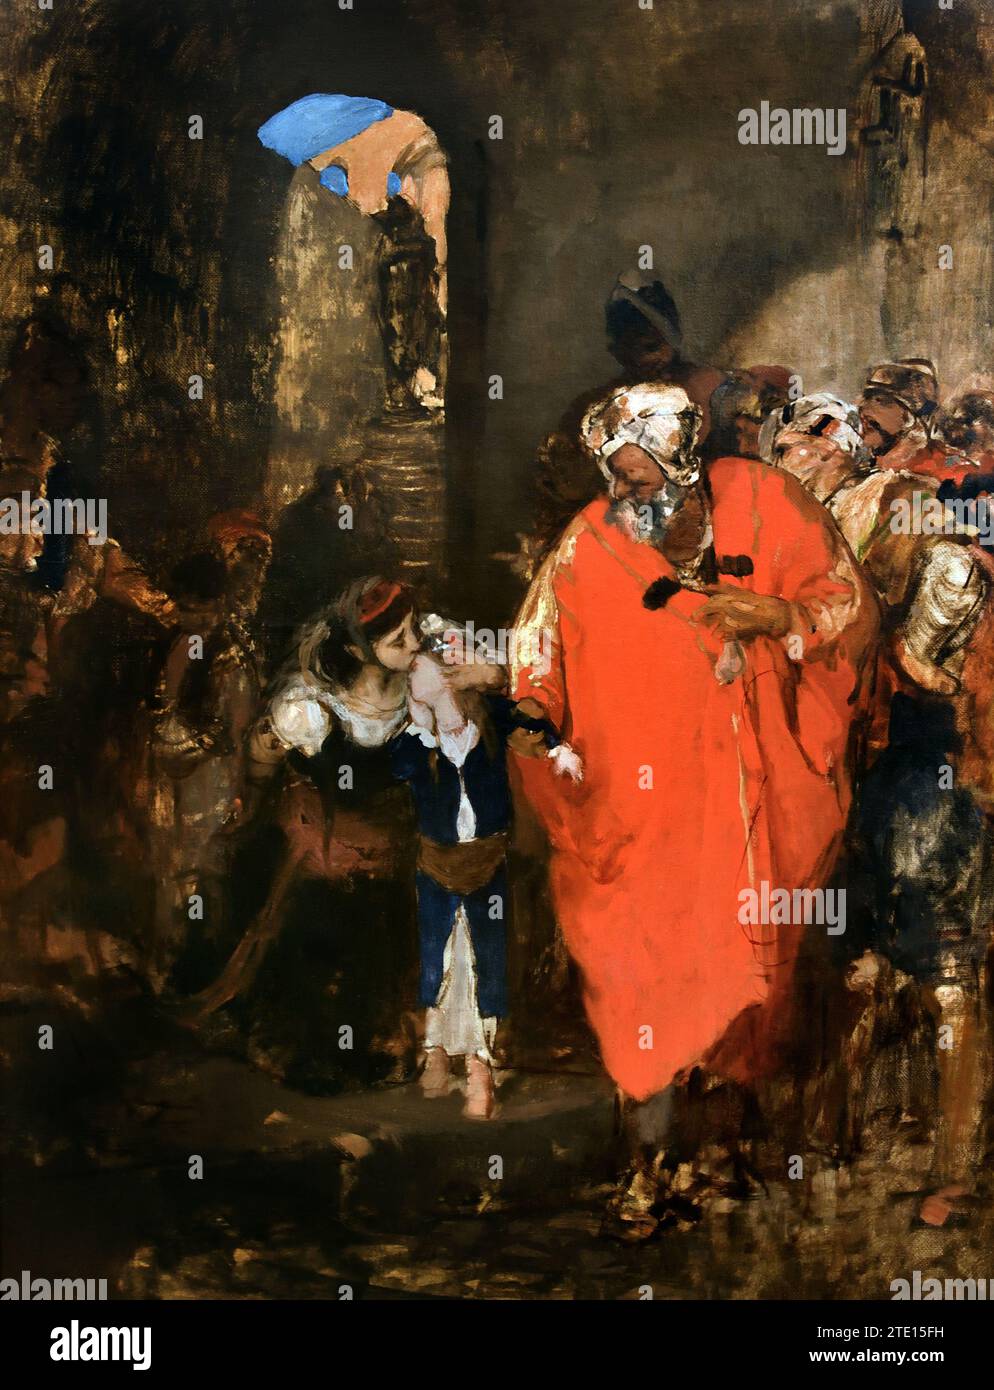 Gyzis Nikolaos (1842 - 1901) le marché aux esclaves , peinture 19RBR-20th Century, Galerie nationale, Athènes, Grèce. Orientaliste, orientalisme Banque D'Images